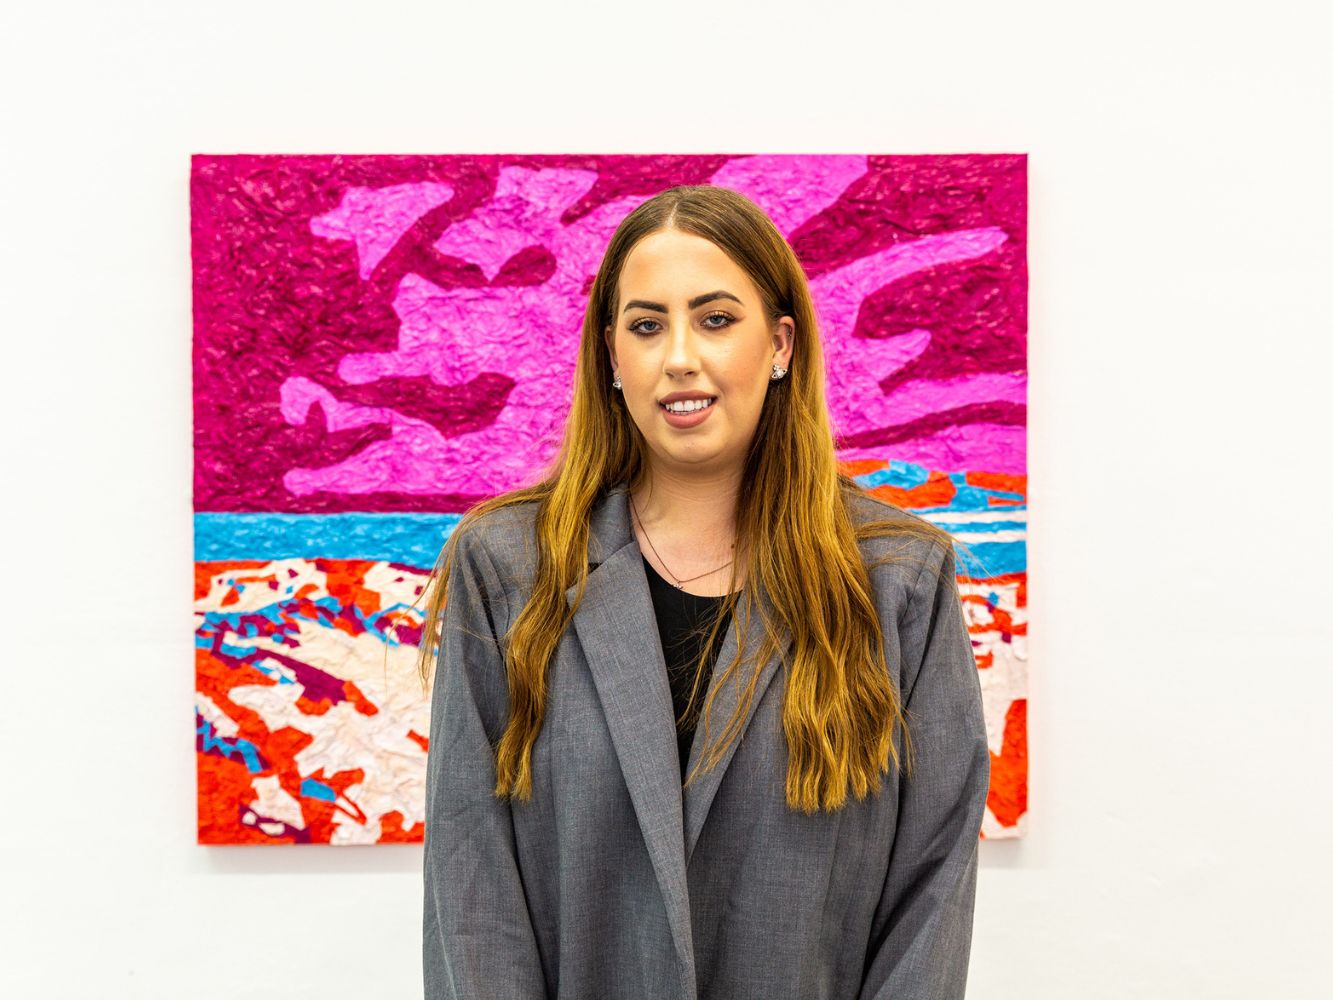 Sarah MacFarlane poses with artwork